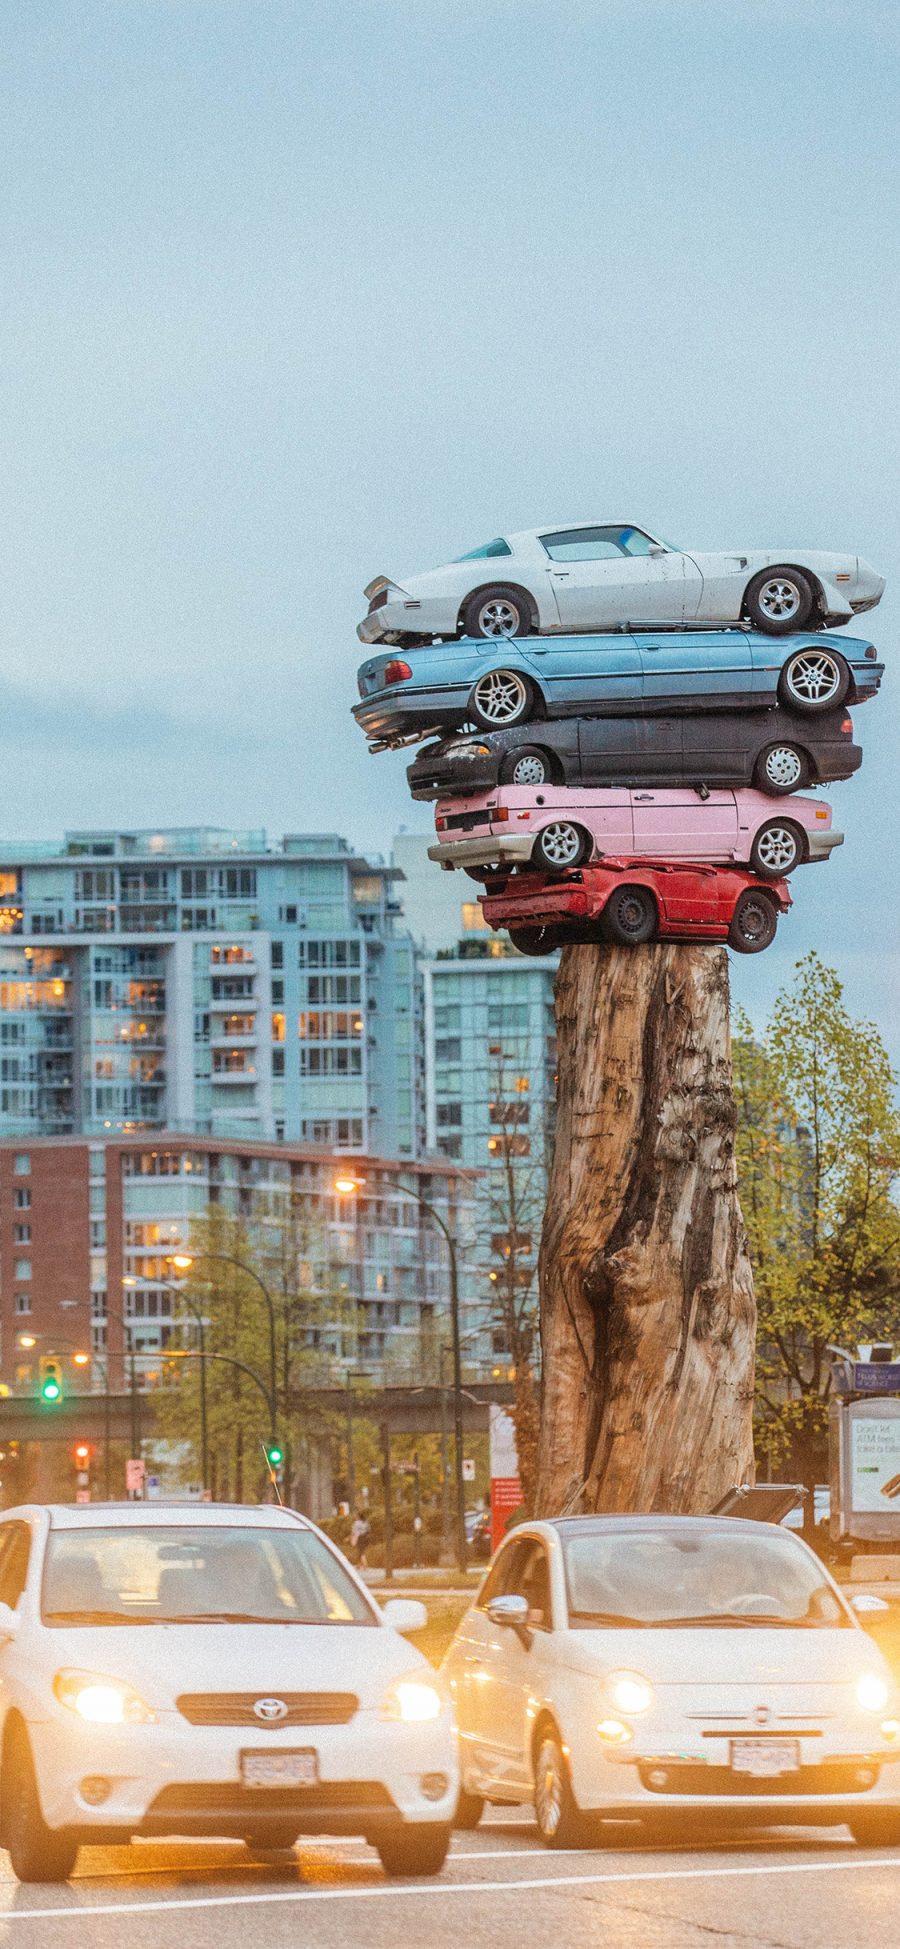 [2436×1125]街道 废弃 旧车 树桩 创意 汽车 轿车 苹果手机壁纸图片